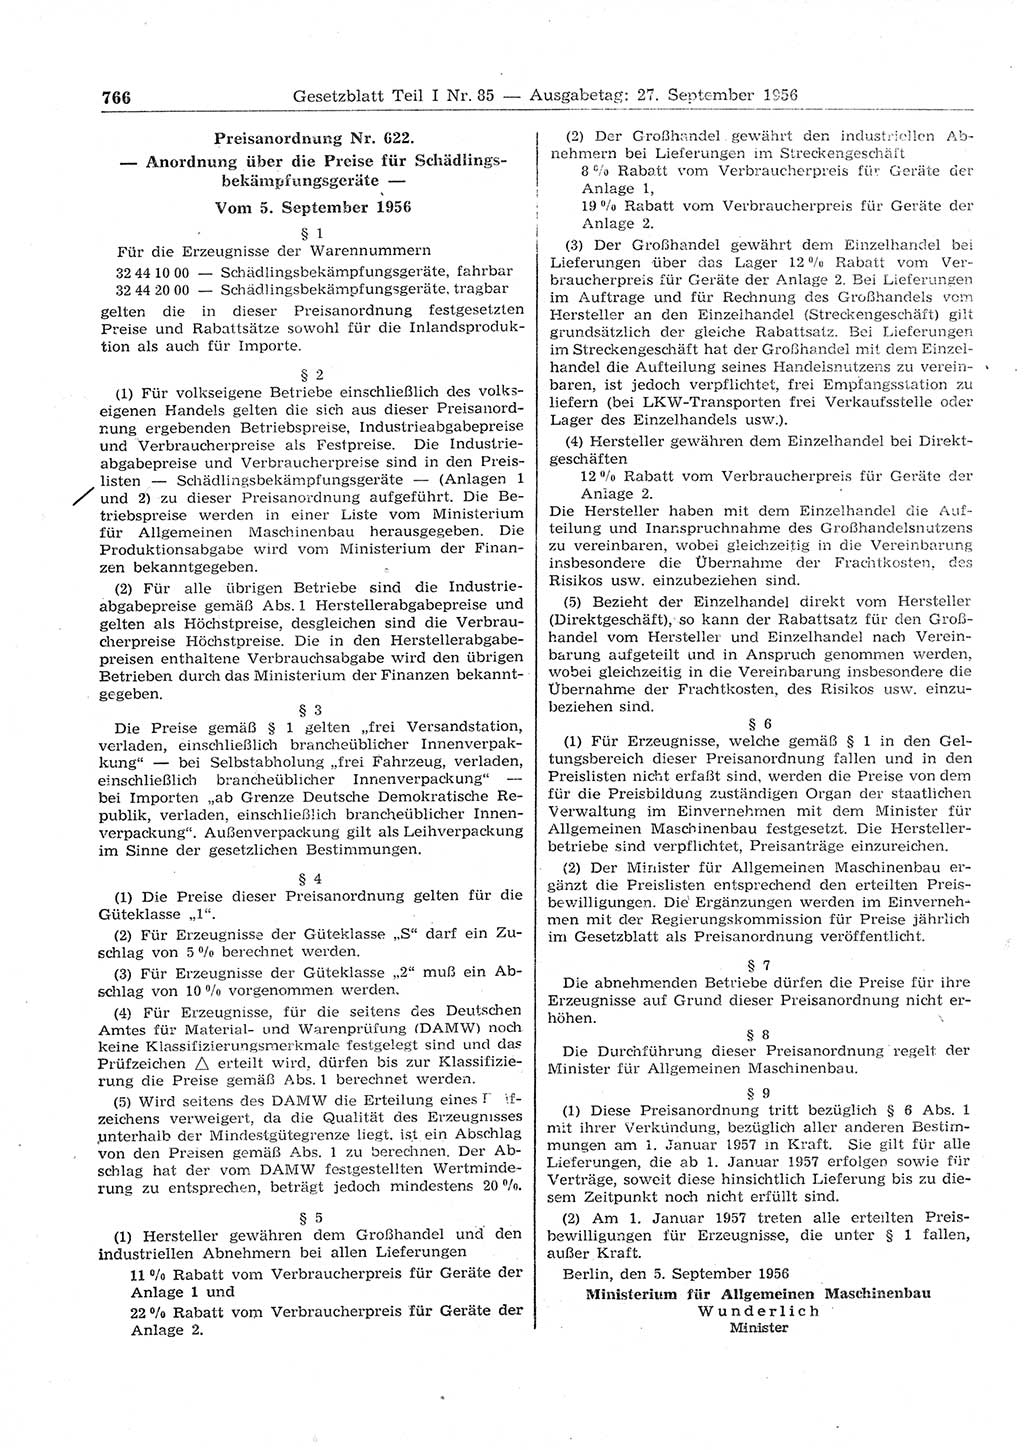 Gesetzblatt (GBl.) der Deutschen Demokratischen Republik (DDR) Teil Ⅰ 1956, Seite 766 (GBl. DDR Ⅰ 1956, S. 766)